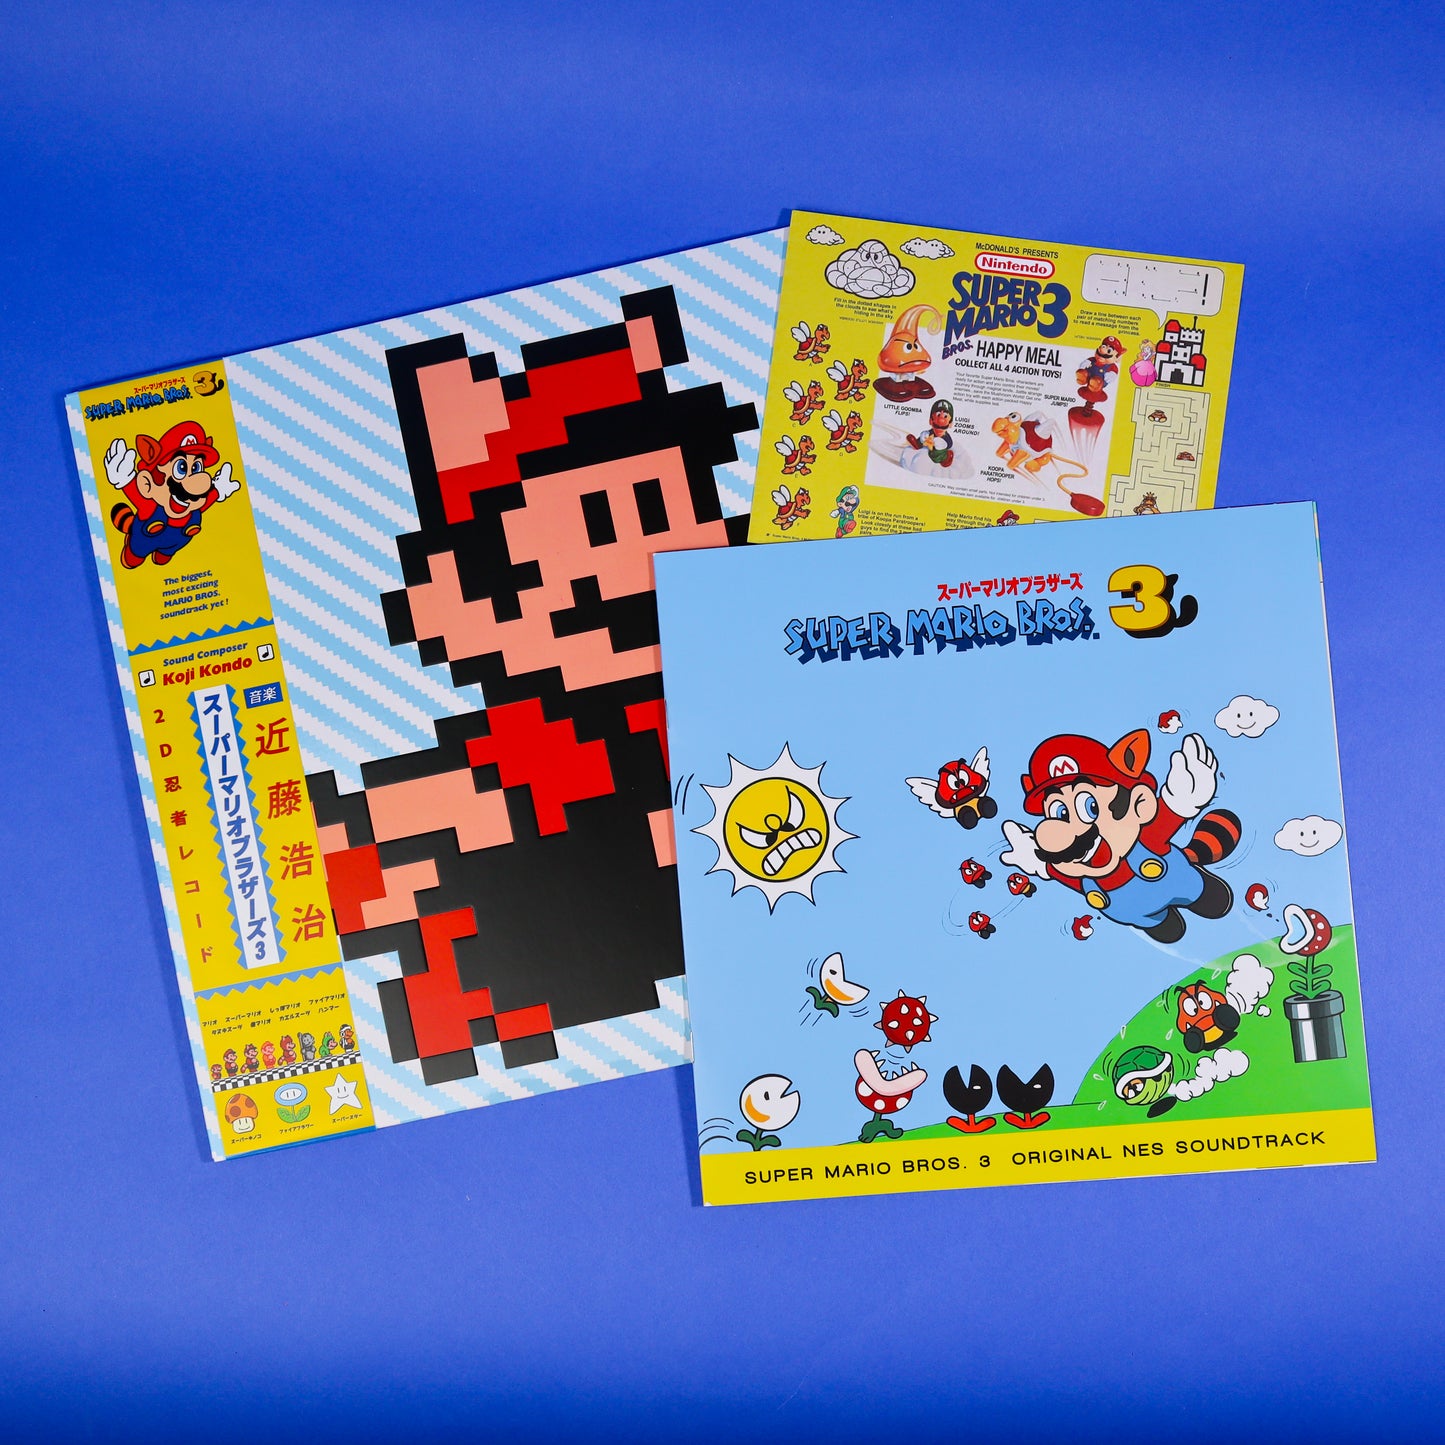 Super Mario Bros 3 Vinyl Record